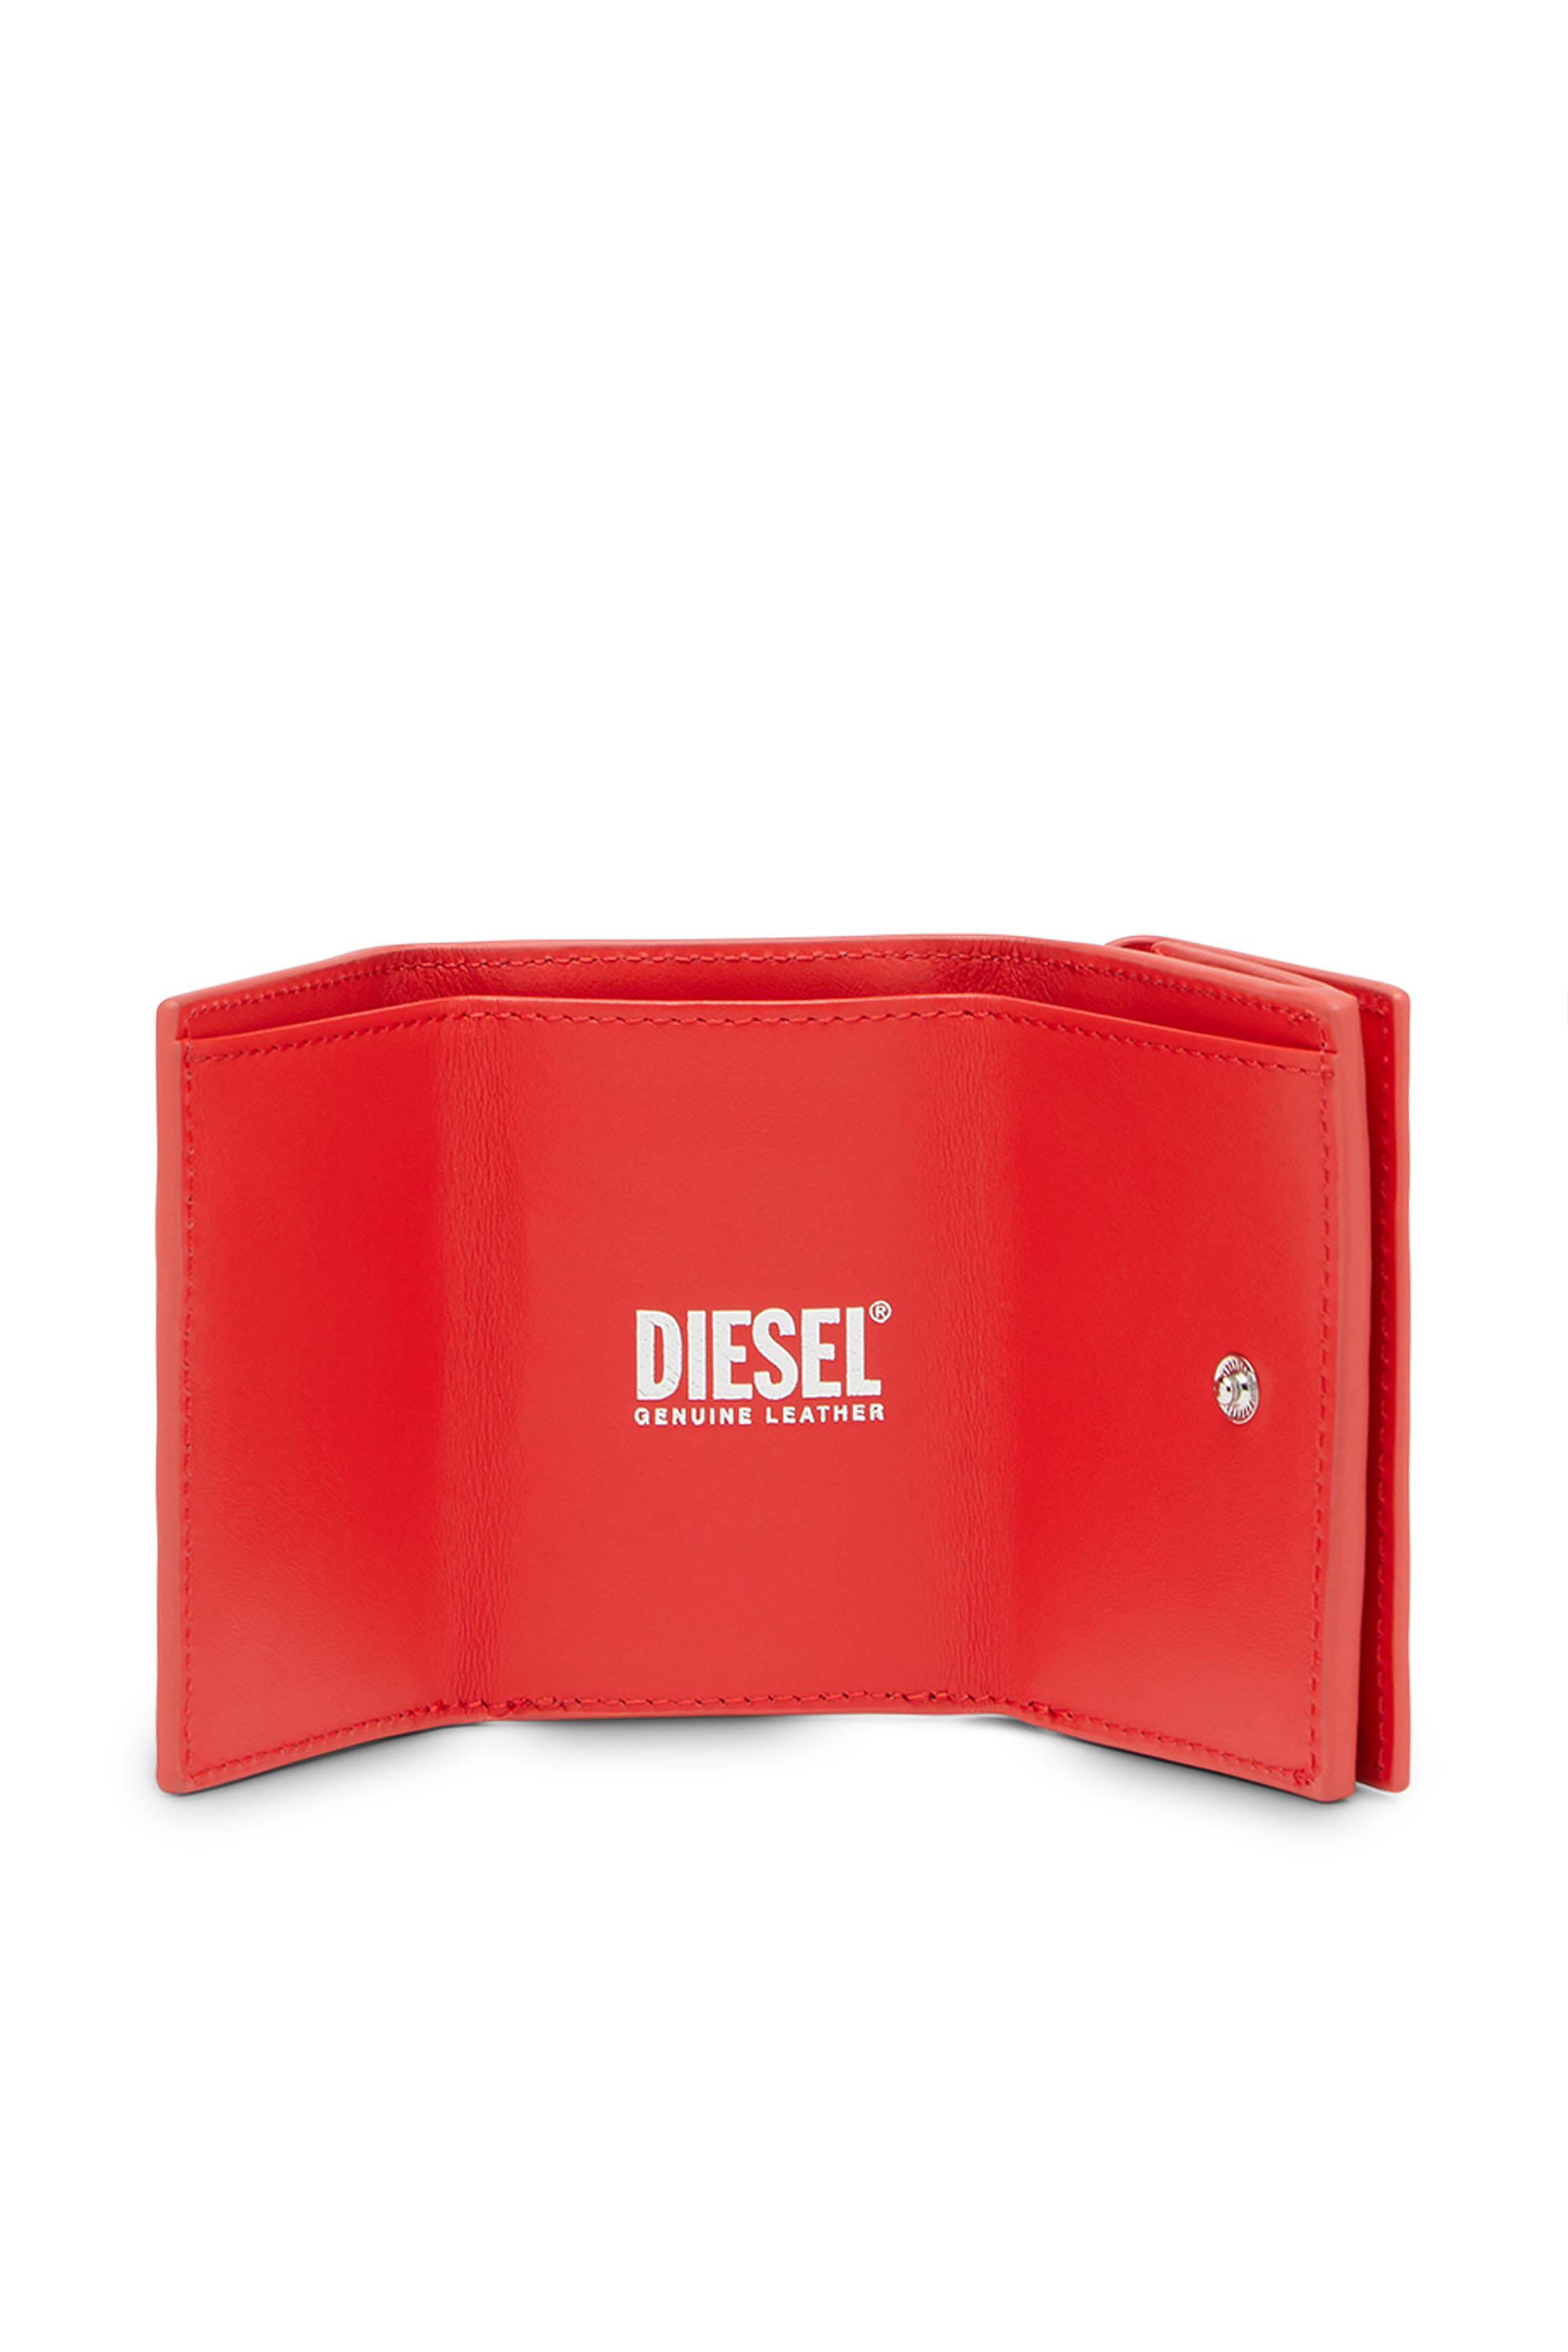 Diesel - LORETTINA, レッド - Image 3